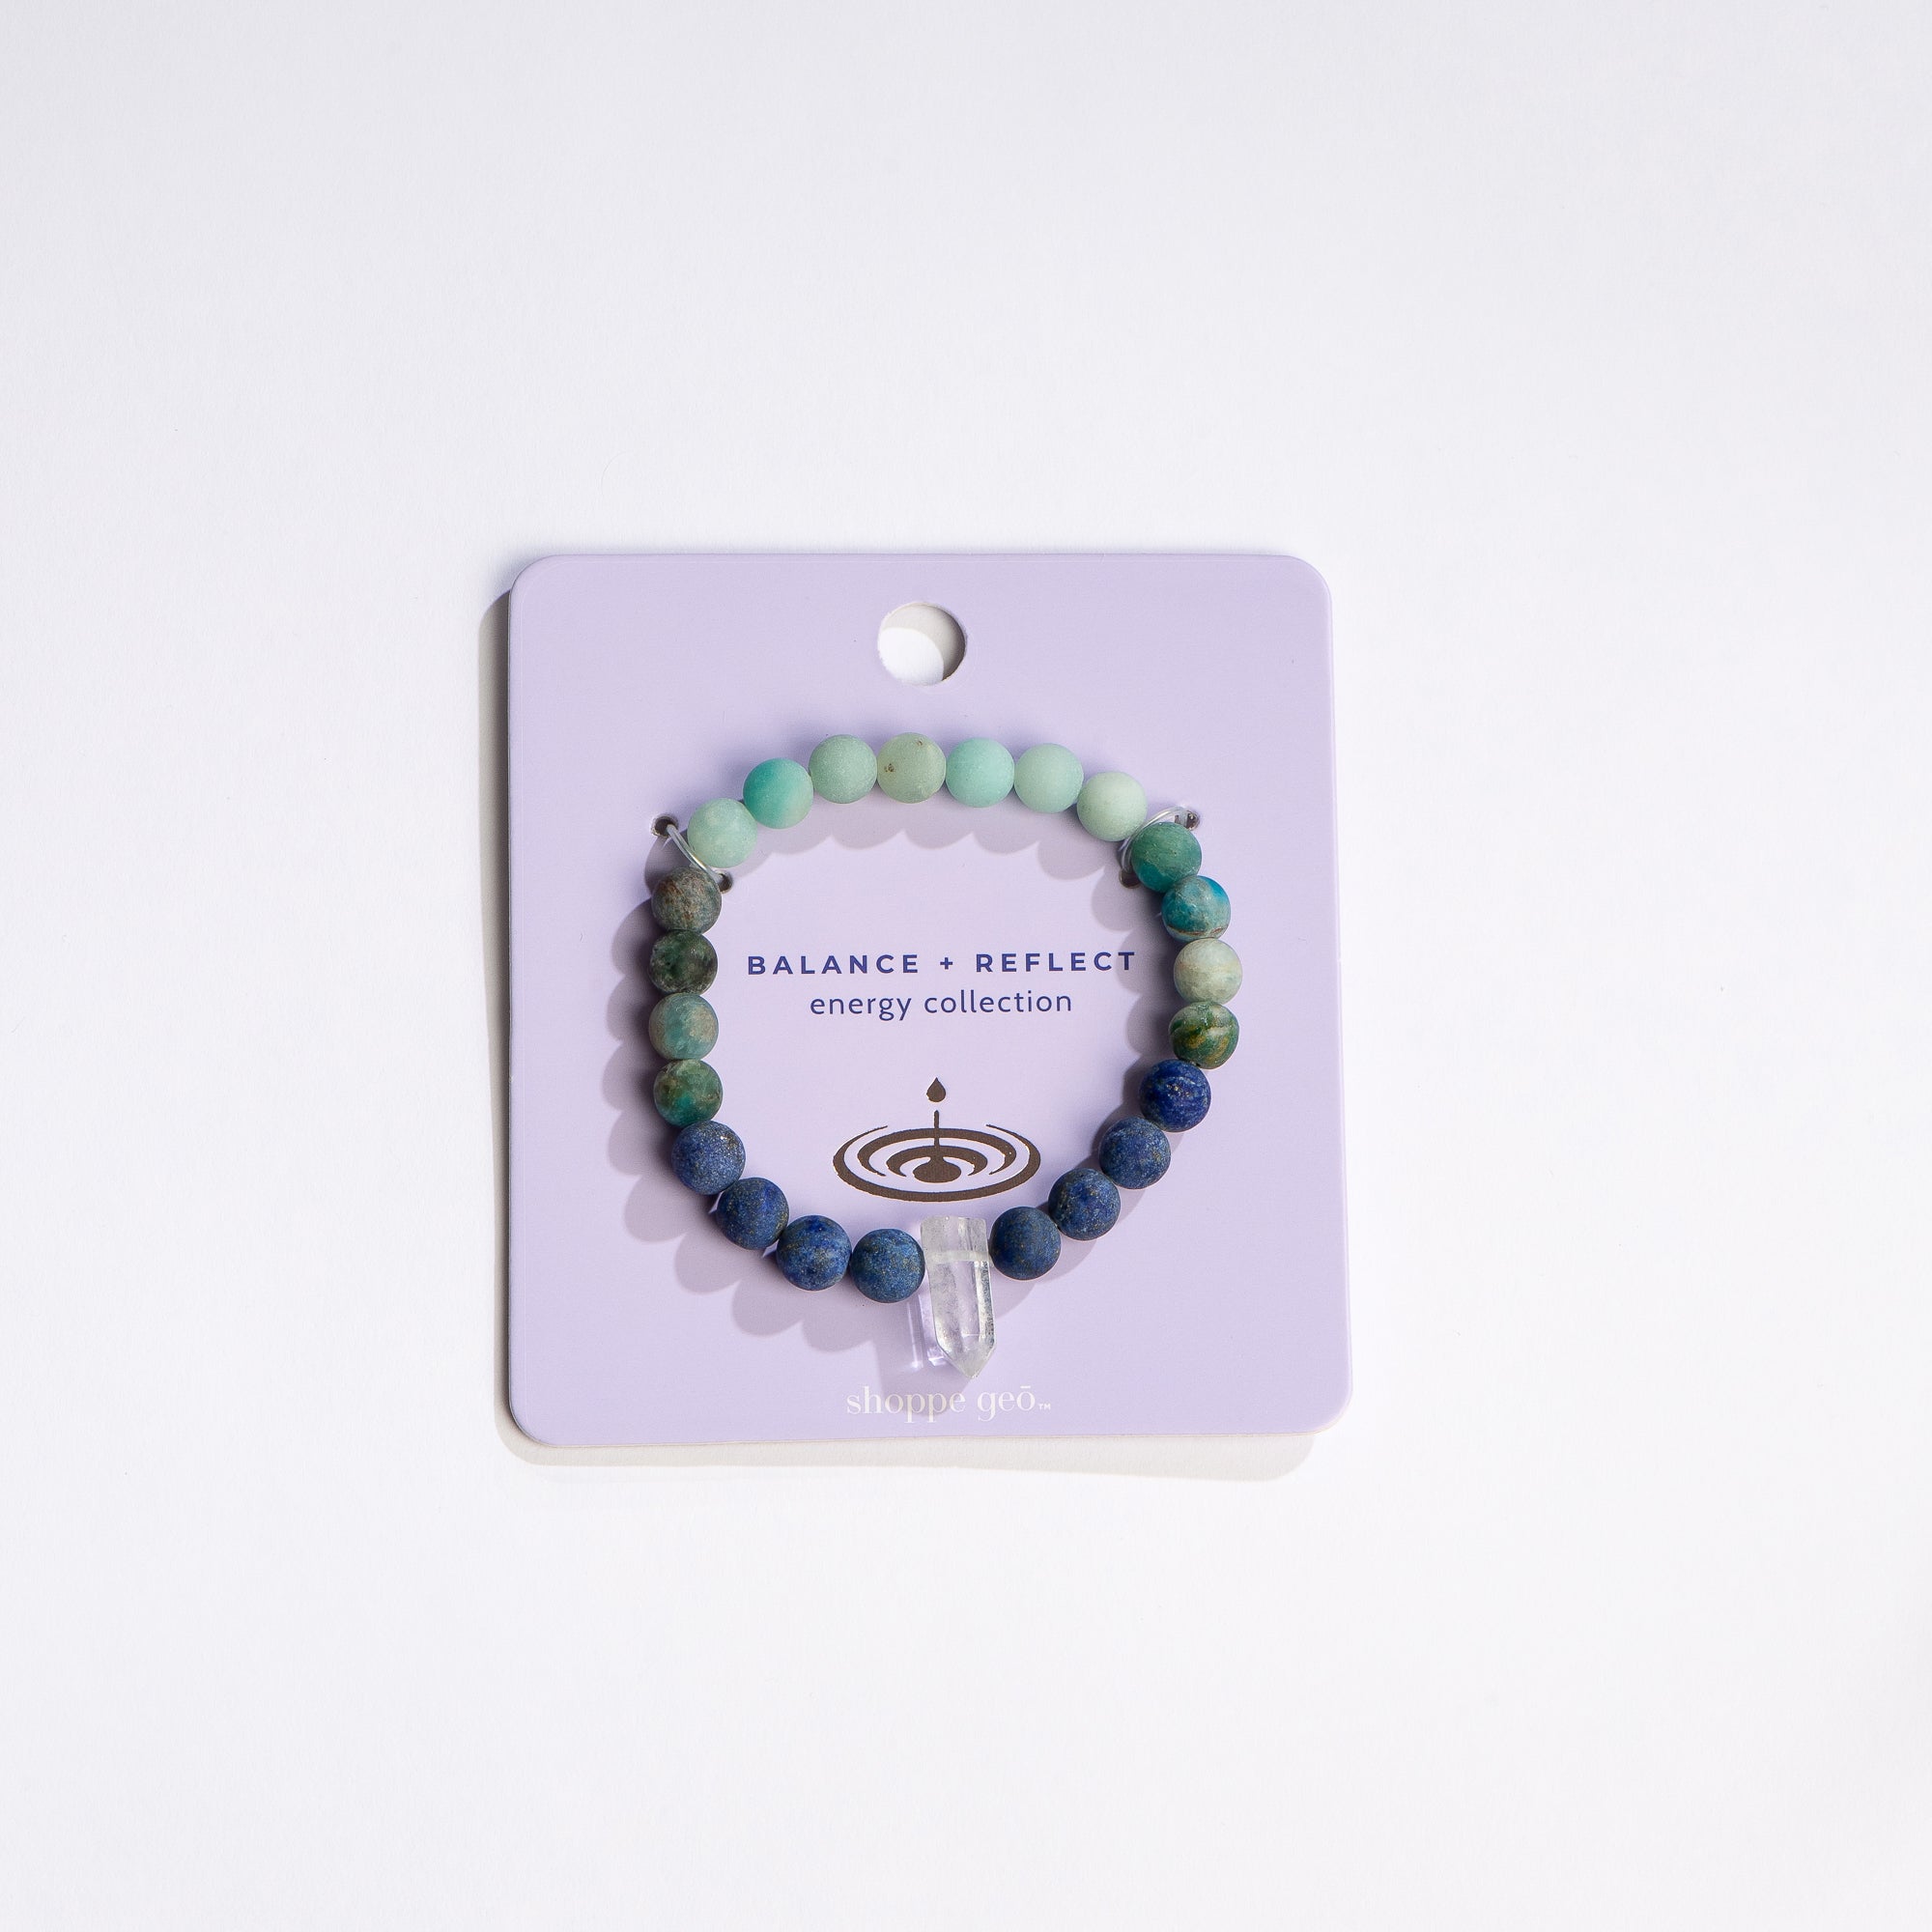 shoppe geo energy collection balance reflect gemstone bracelet